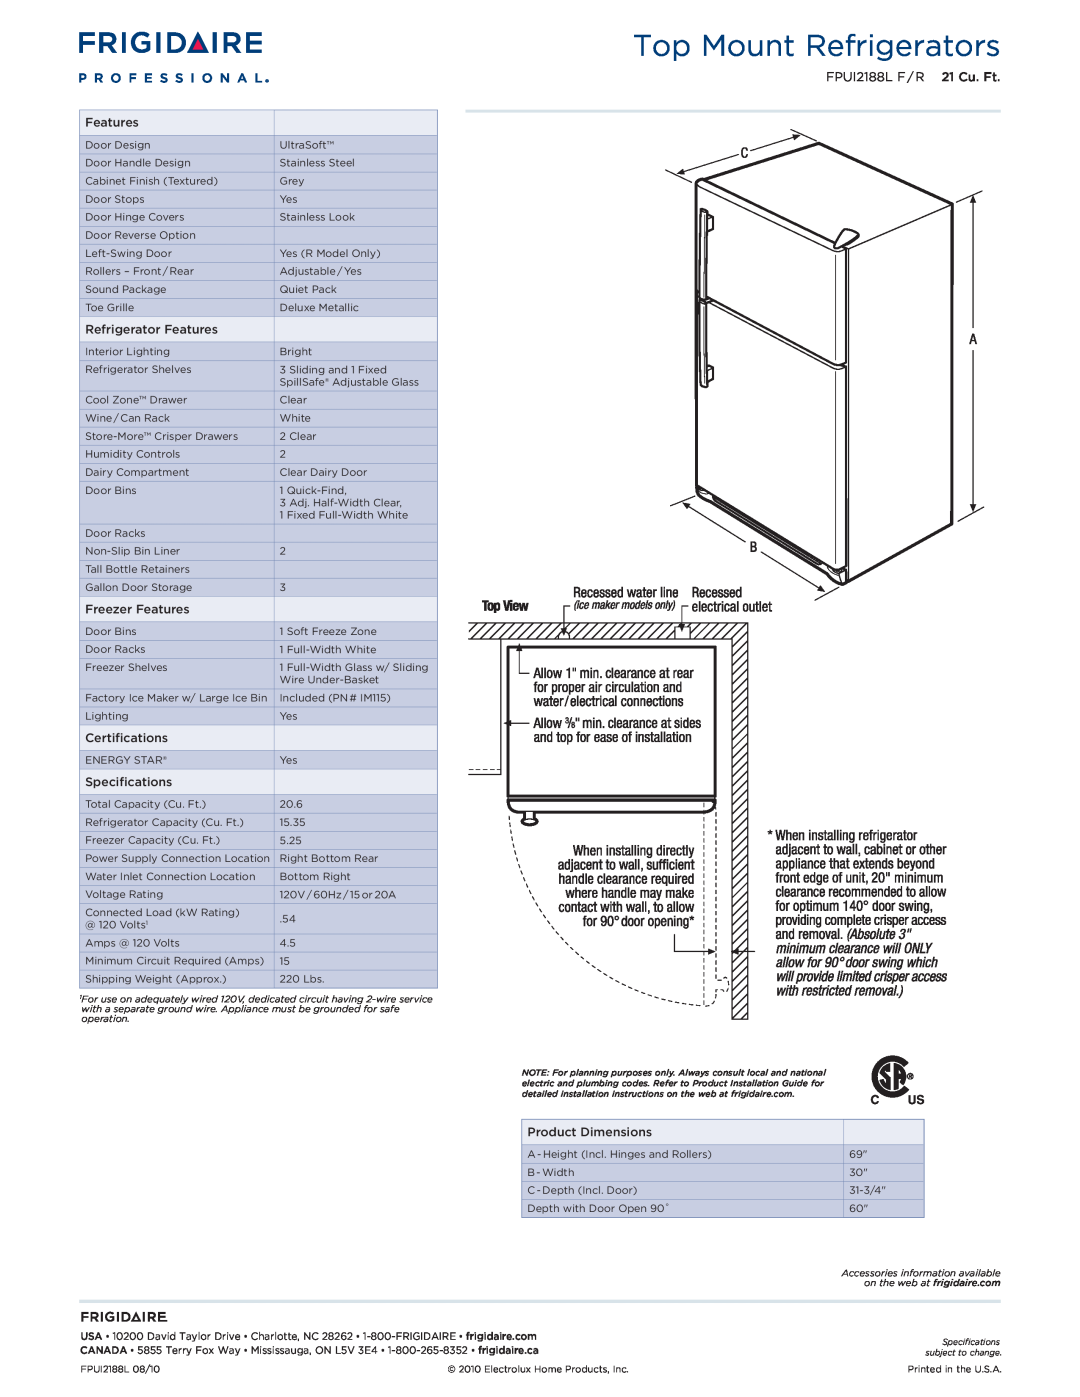 Frigidaire FPUI2188L F/R1 dimensions Top Mount Refrigerators, FPUI2188L F / R 21 Cu. Ft 